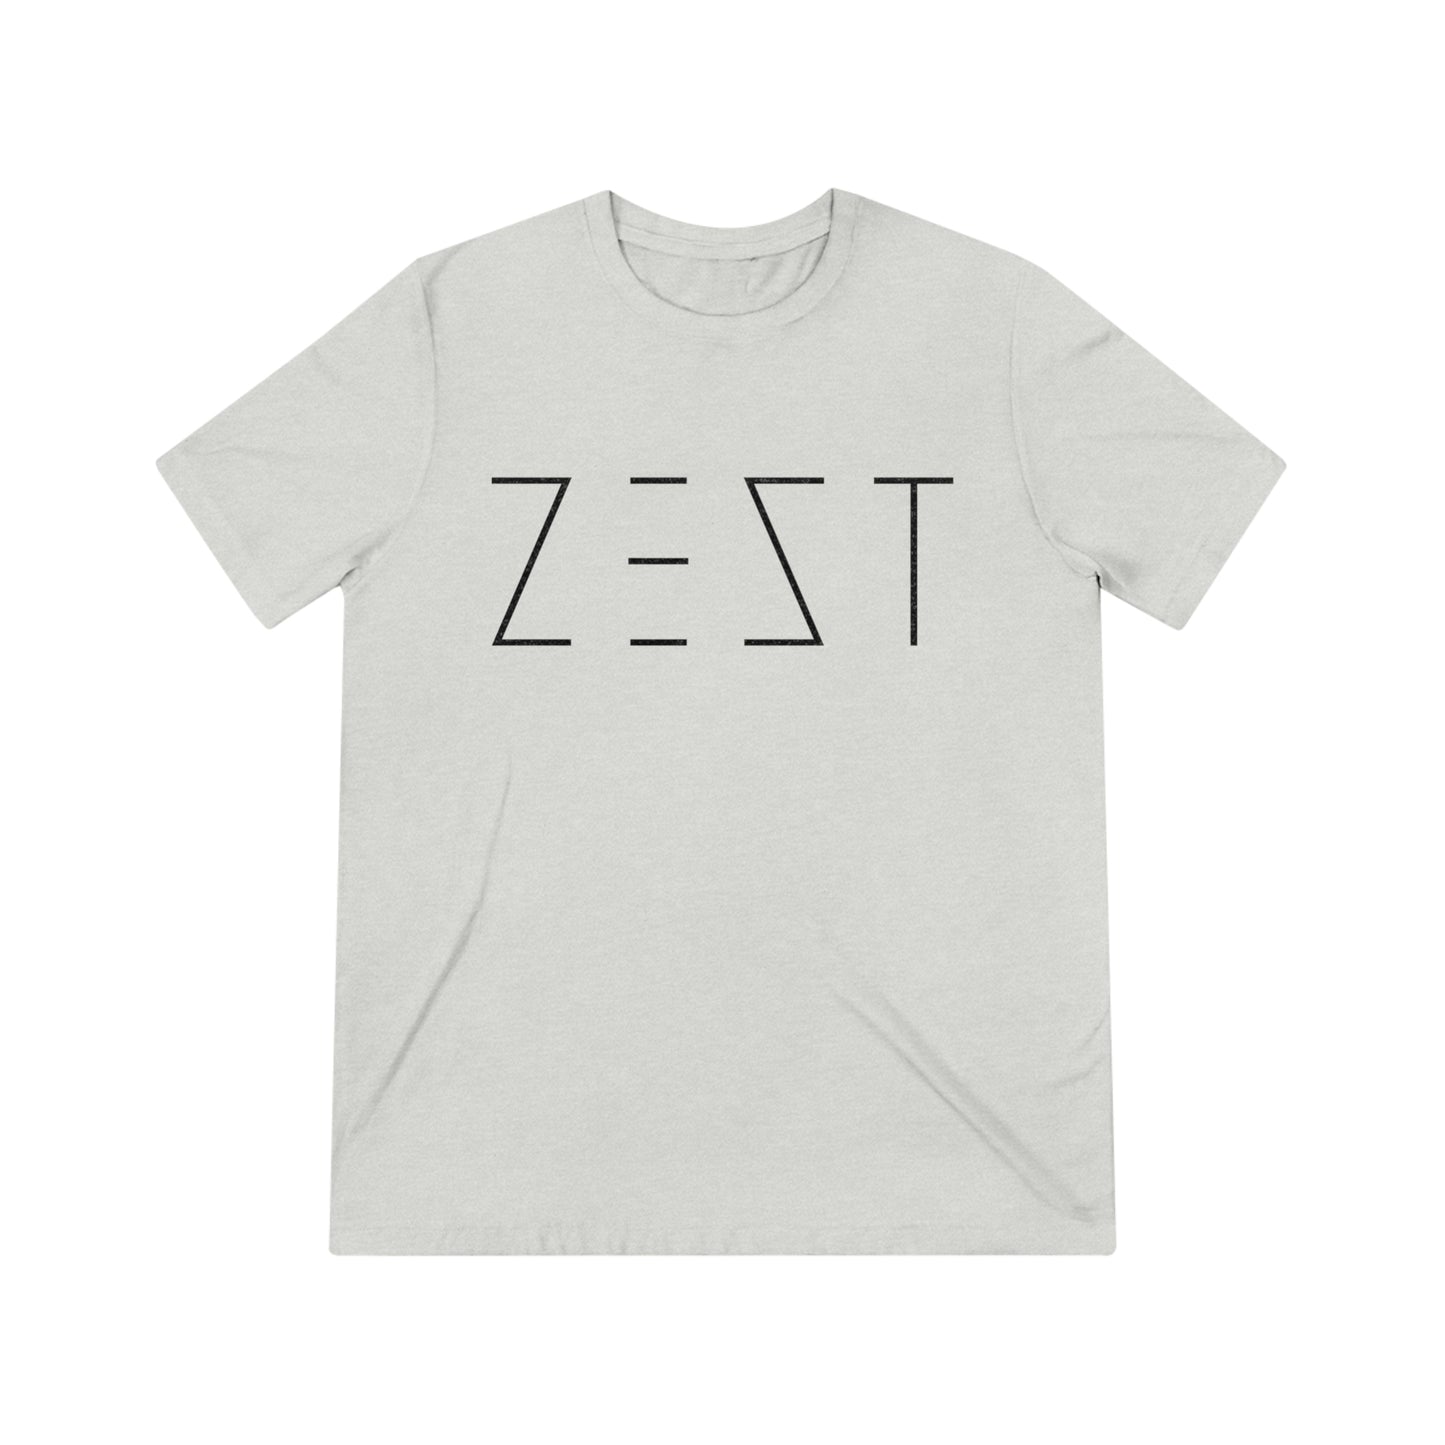 ZEST - T-Shirt